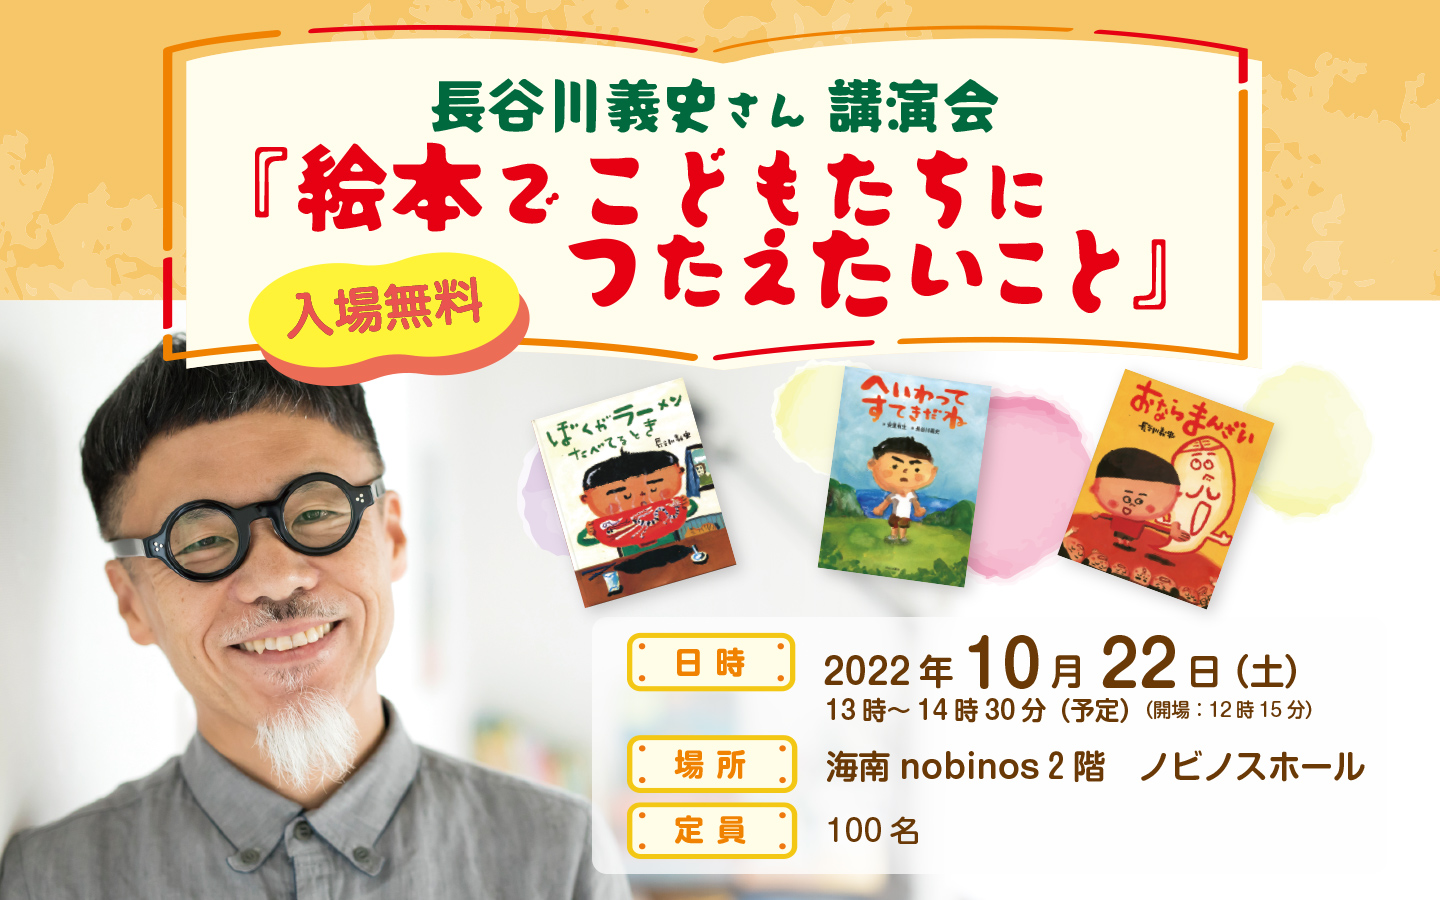 長谷川義史さん講演会『絵本でこどもたちにつたえたいこと』